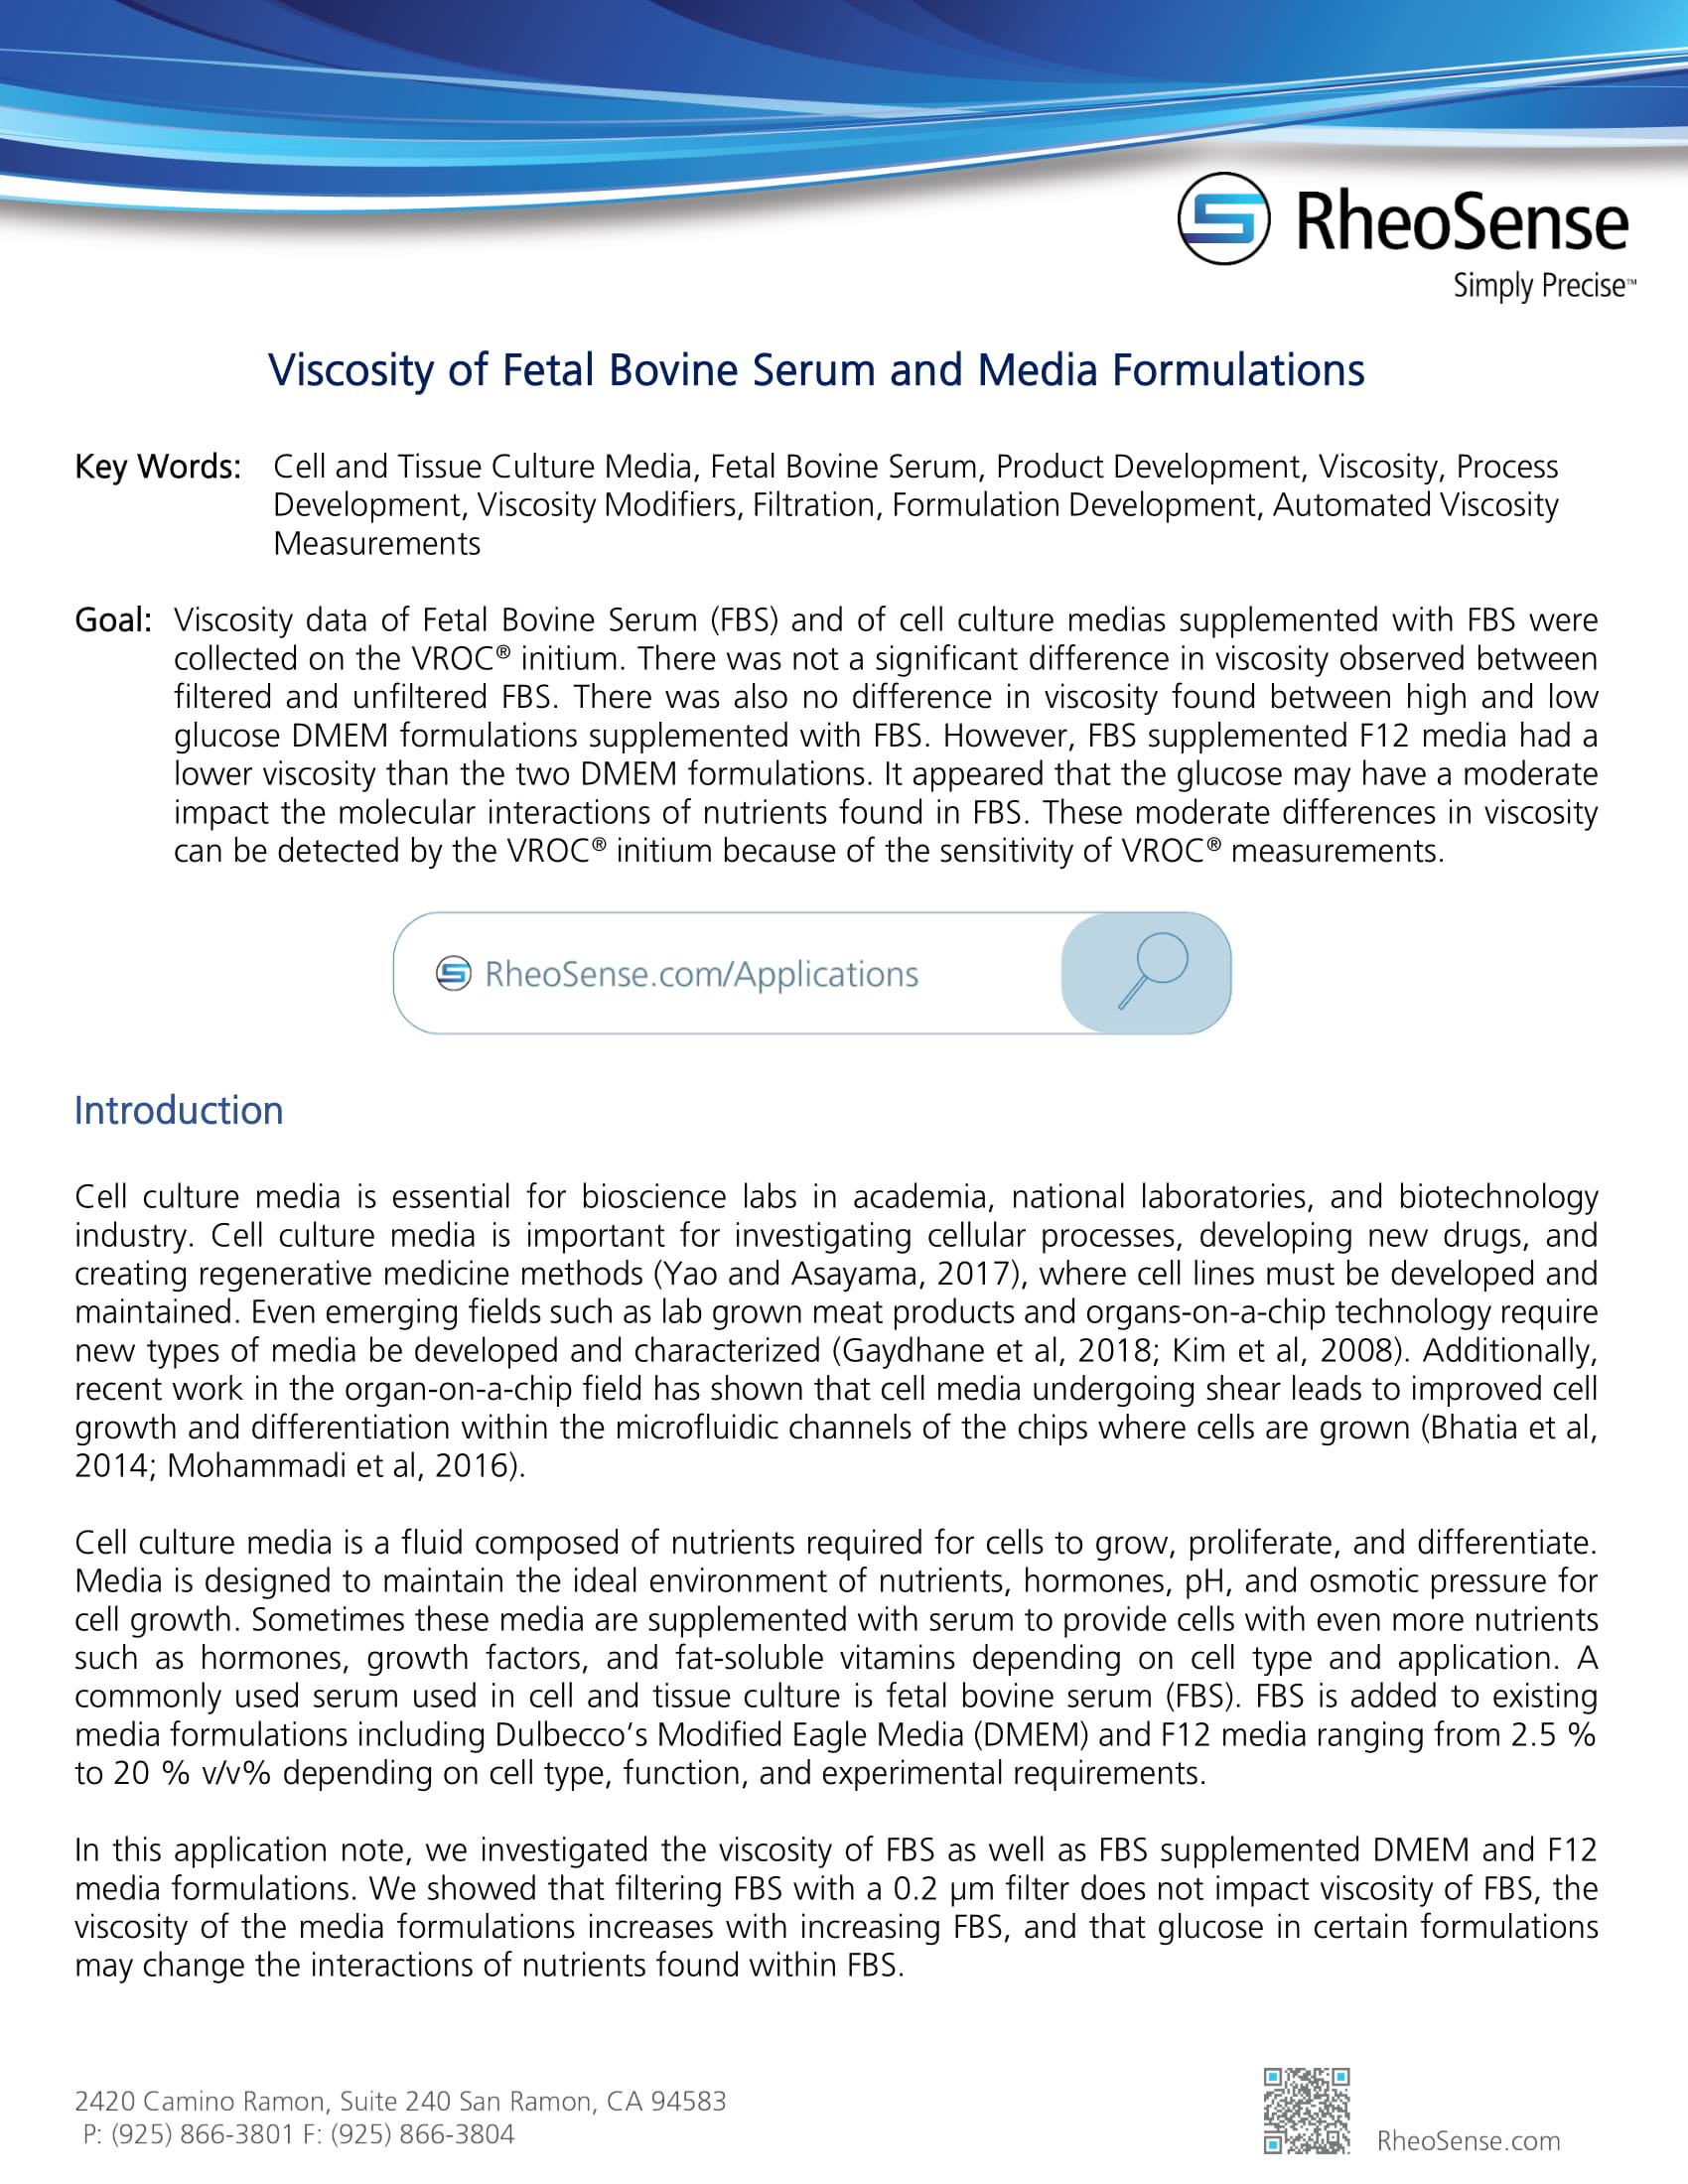 VROC-initium-APP 39 (07-2020) Viscosity of Fetal Bovine Serum and Media Formulations-1.jpg